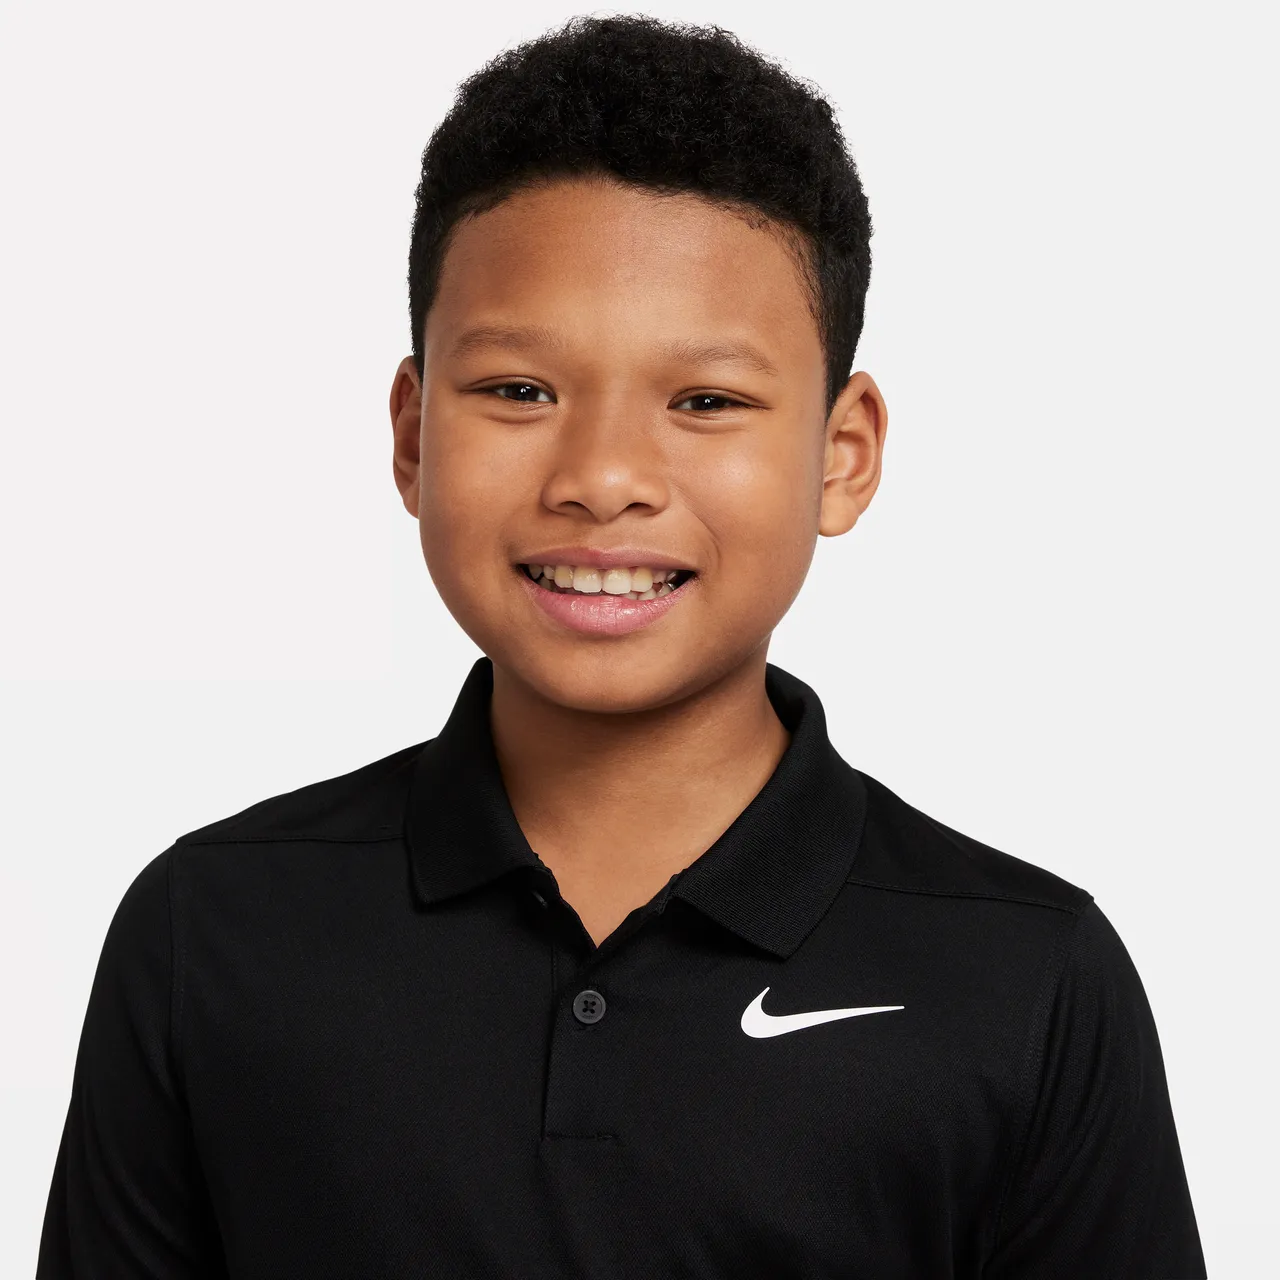 Nike Dri-FIT Victory Golf-Poloshirt für ältere Kinder (Jungen) - Schwarz